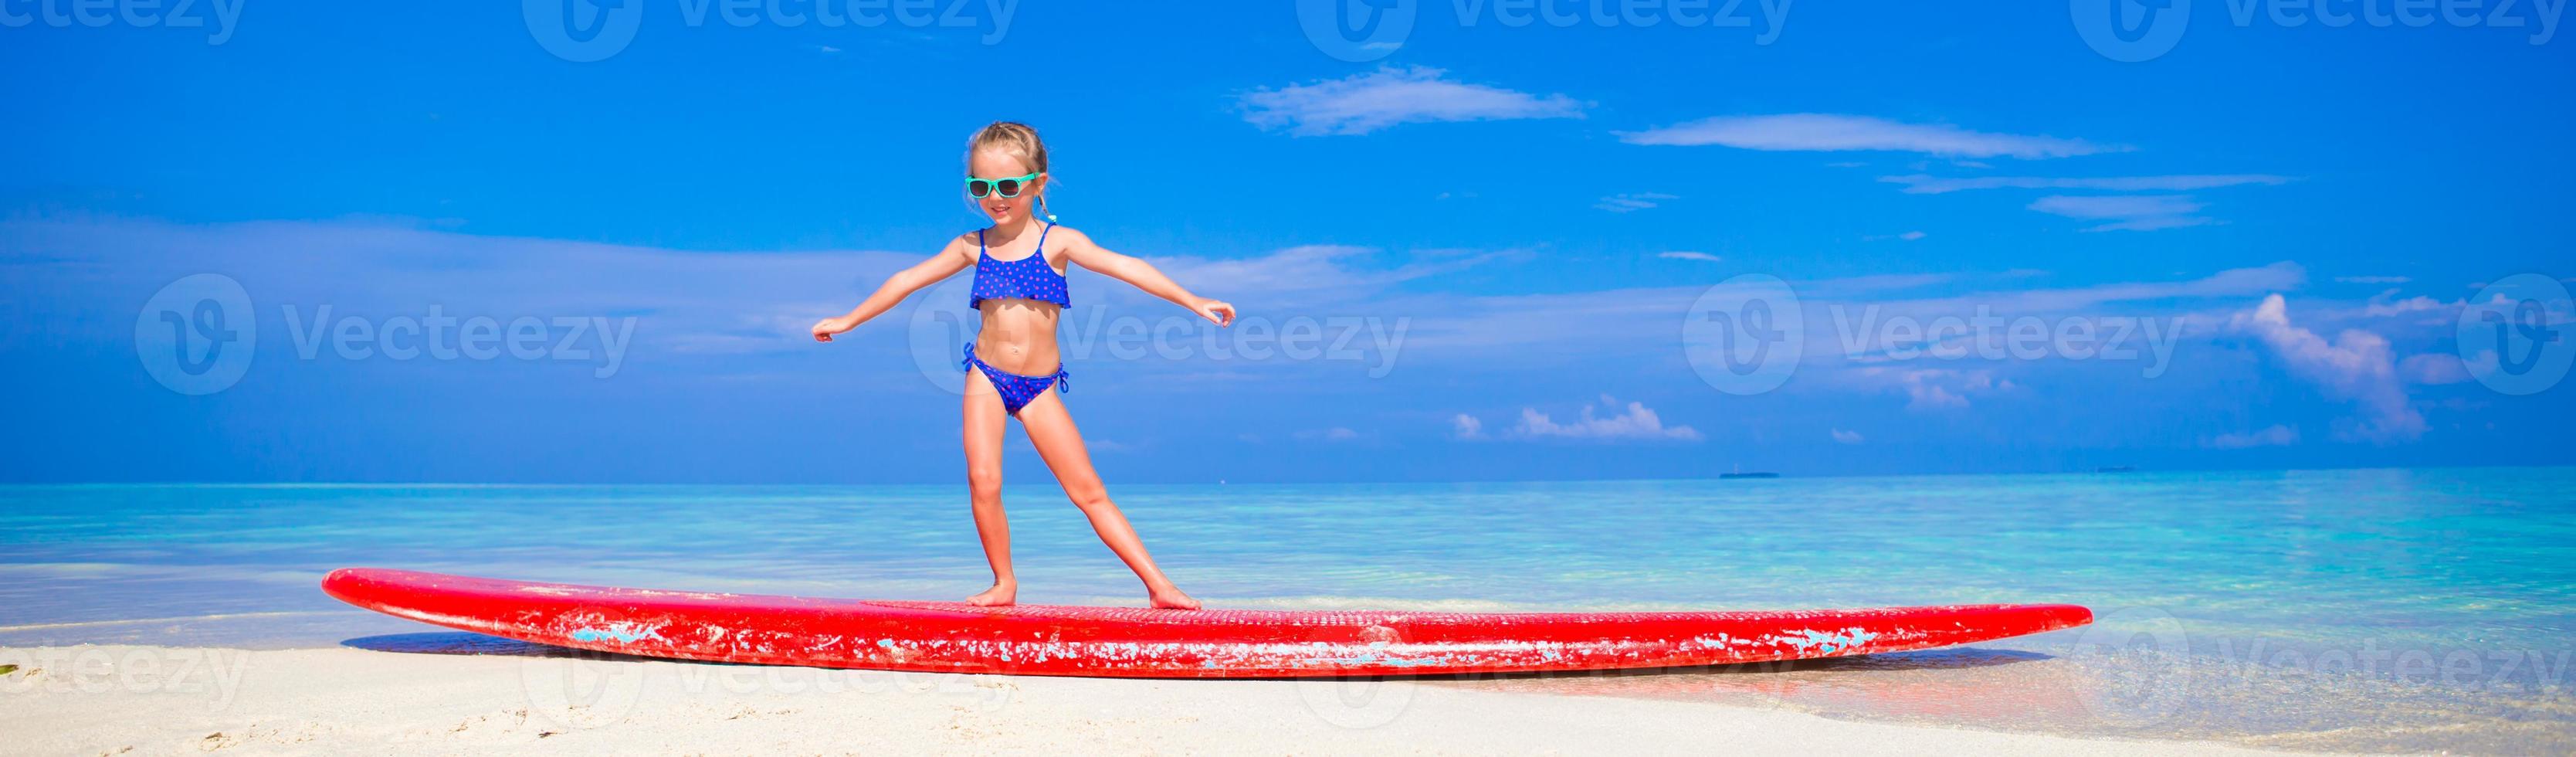 adorable niña practica la posición de surf en la playa foto